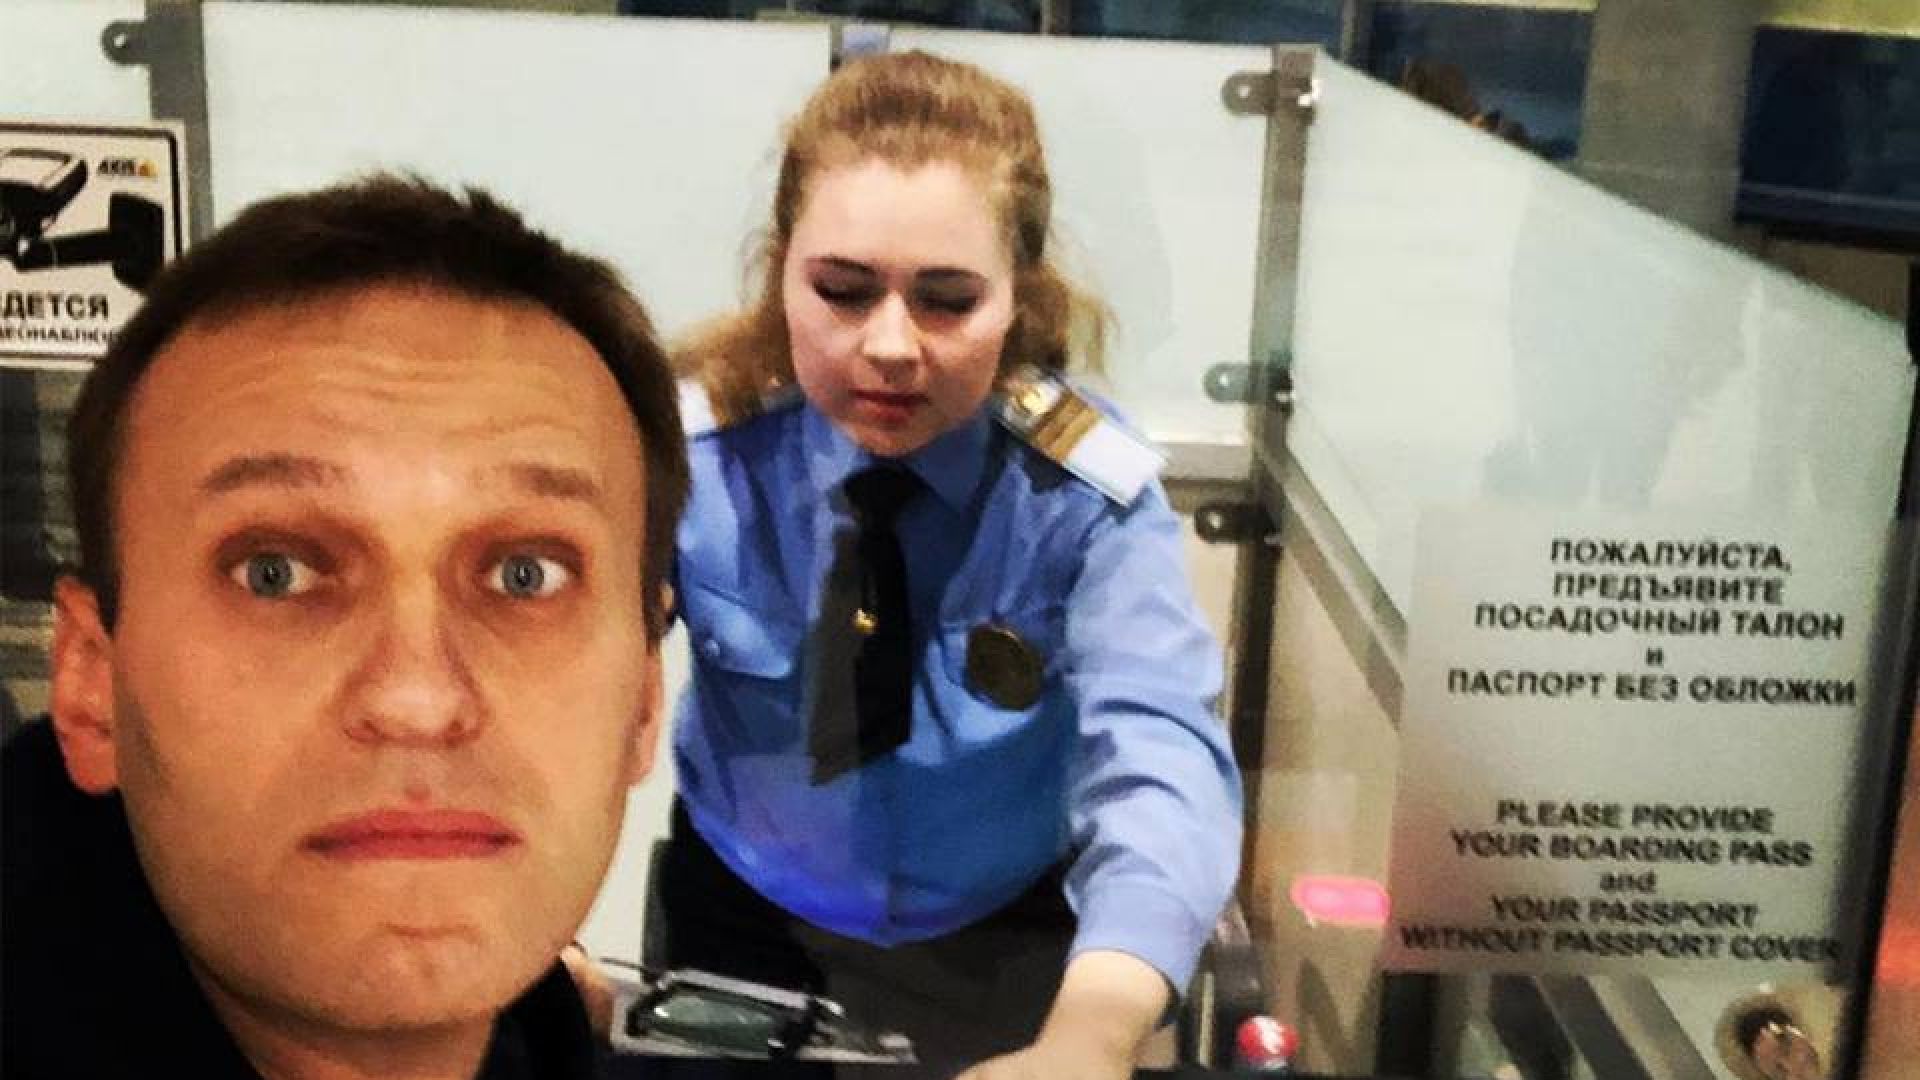 Опозиционерът Алексей Навални получи разрешение да напусне Русия днес, за